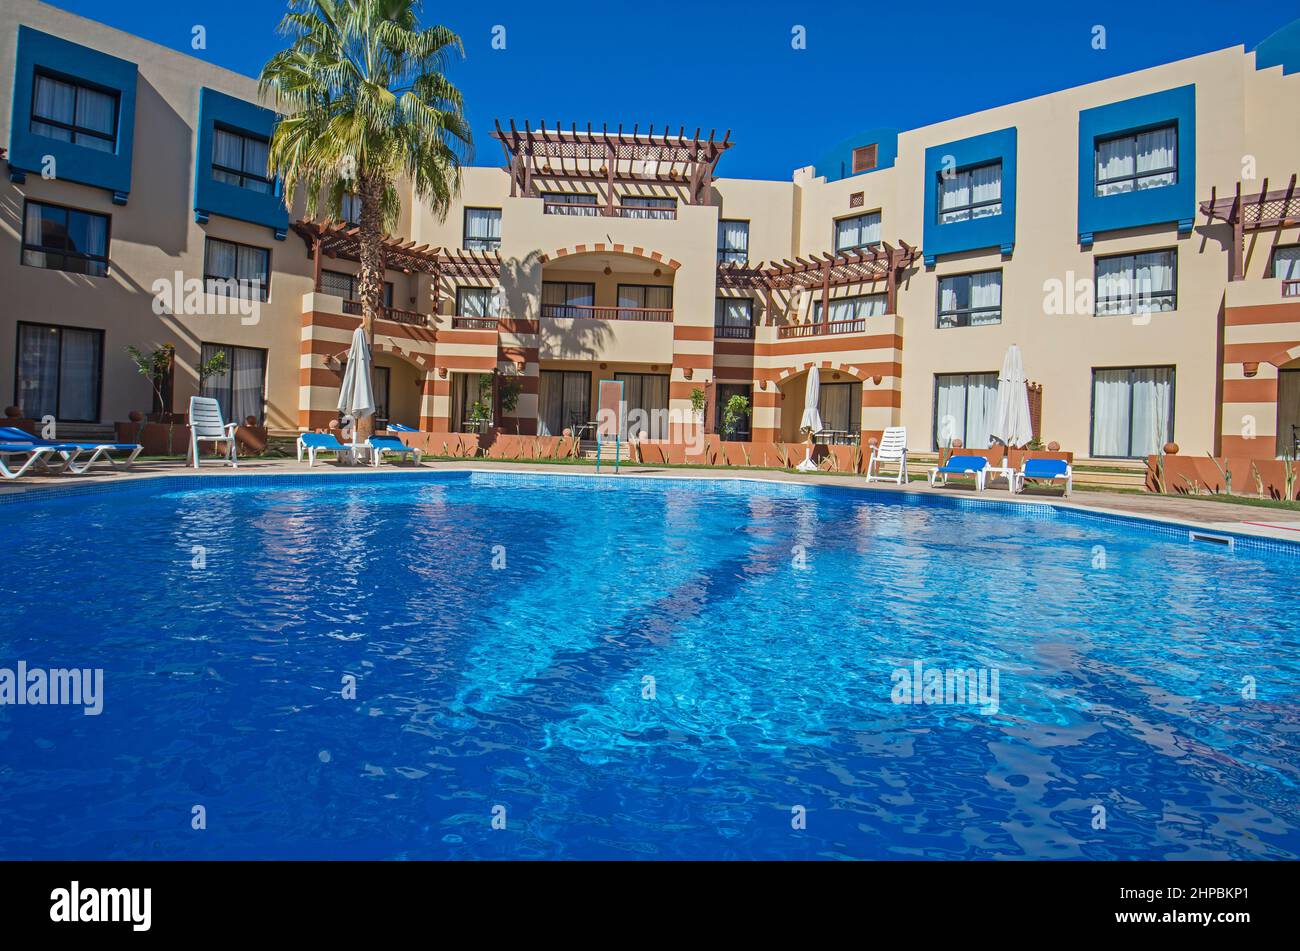 Swimmingpool mit Gebäuden in einem luxuriösen tropischen Hotelresort vor blauem Himmel Stockfoto